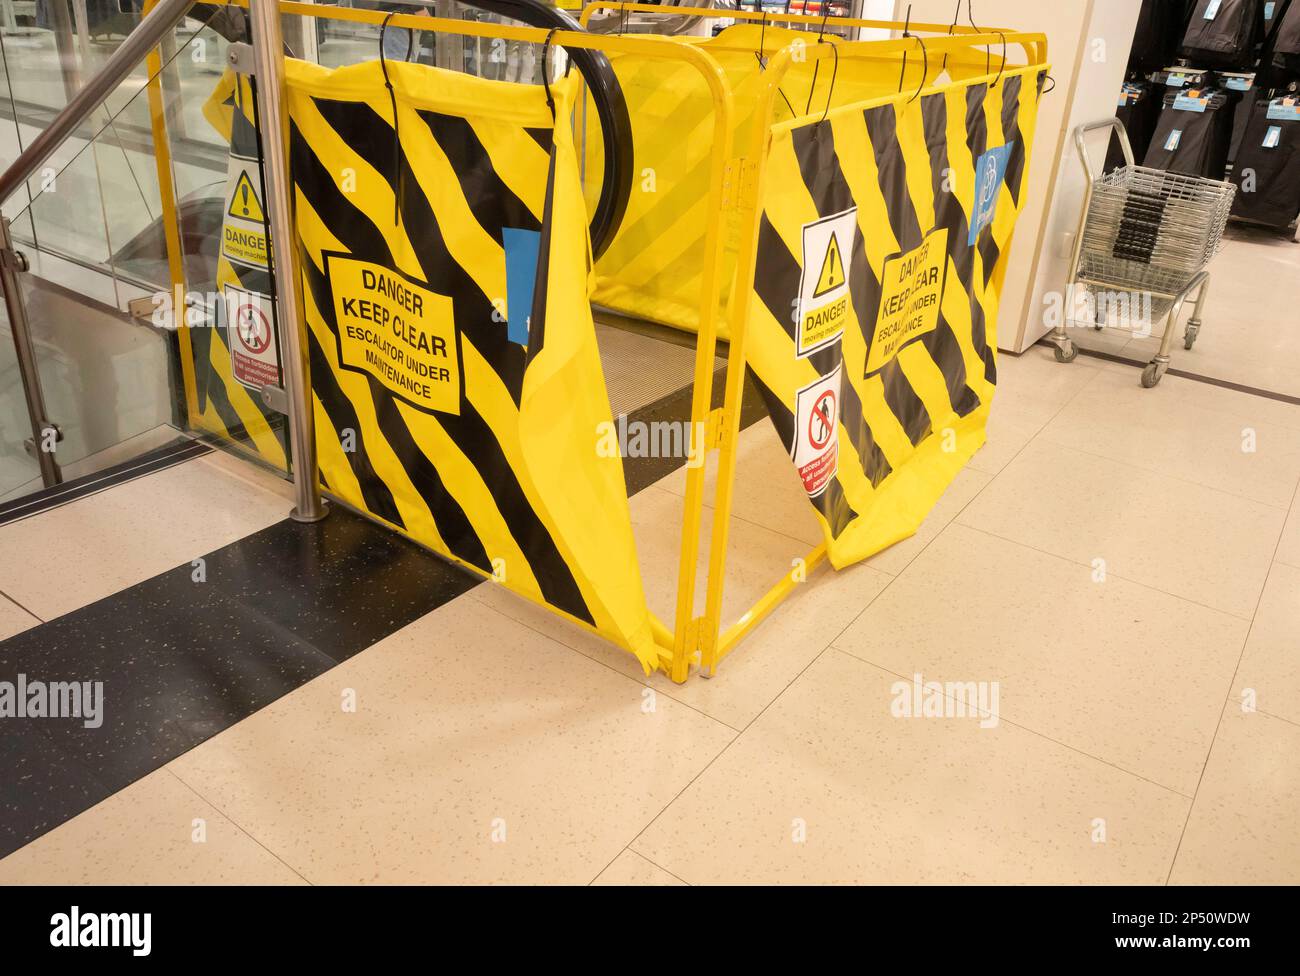 Le haut de l'escalier roulant d'un grand magasin est fermé par des barrières jaunes pendant les travaux d'entretien Banque D'Images